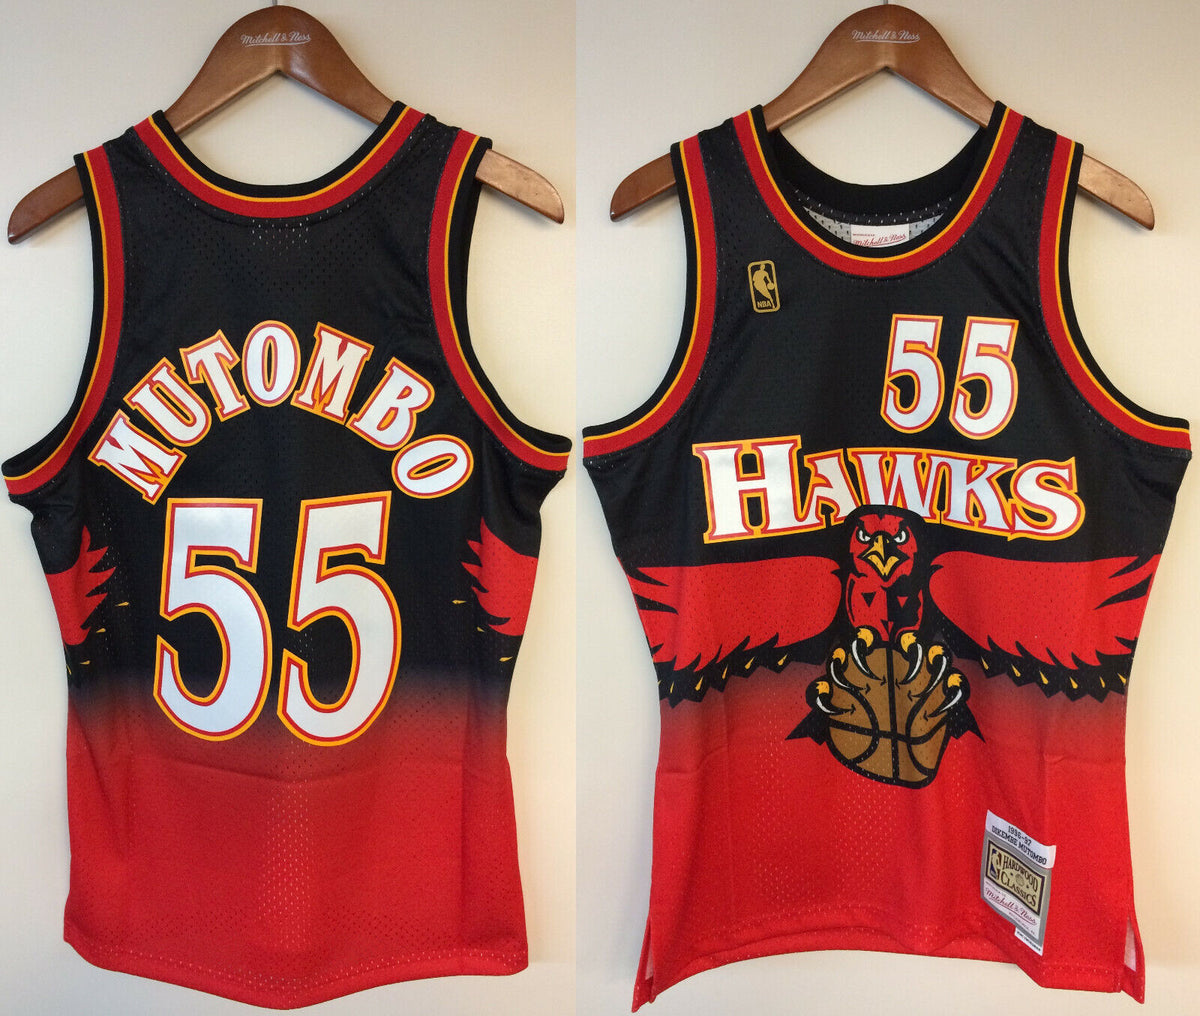 Swingman Jersey Atlanta Hawks 1996-97 Dikembe Mutombo - Shop Mitchell &  Ness Swingman Jerseys and Replicas Mitchell & Ness Nostalgia Co.